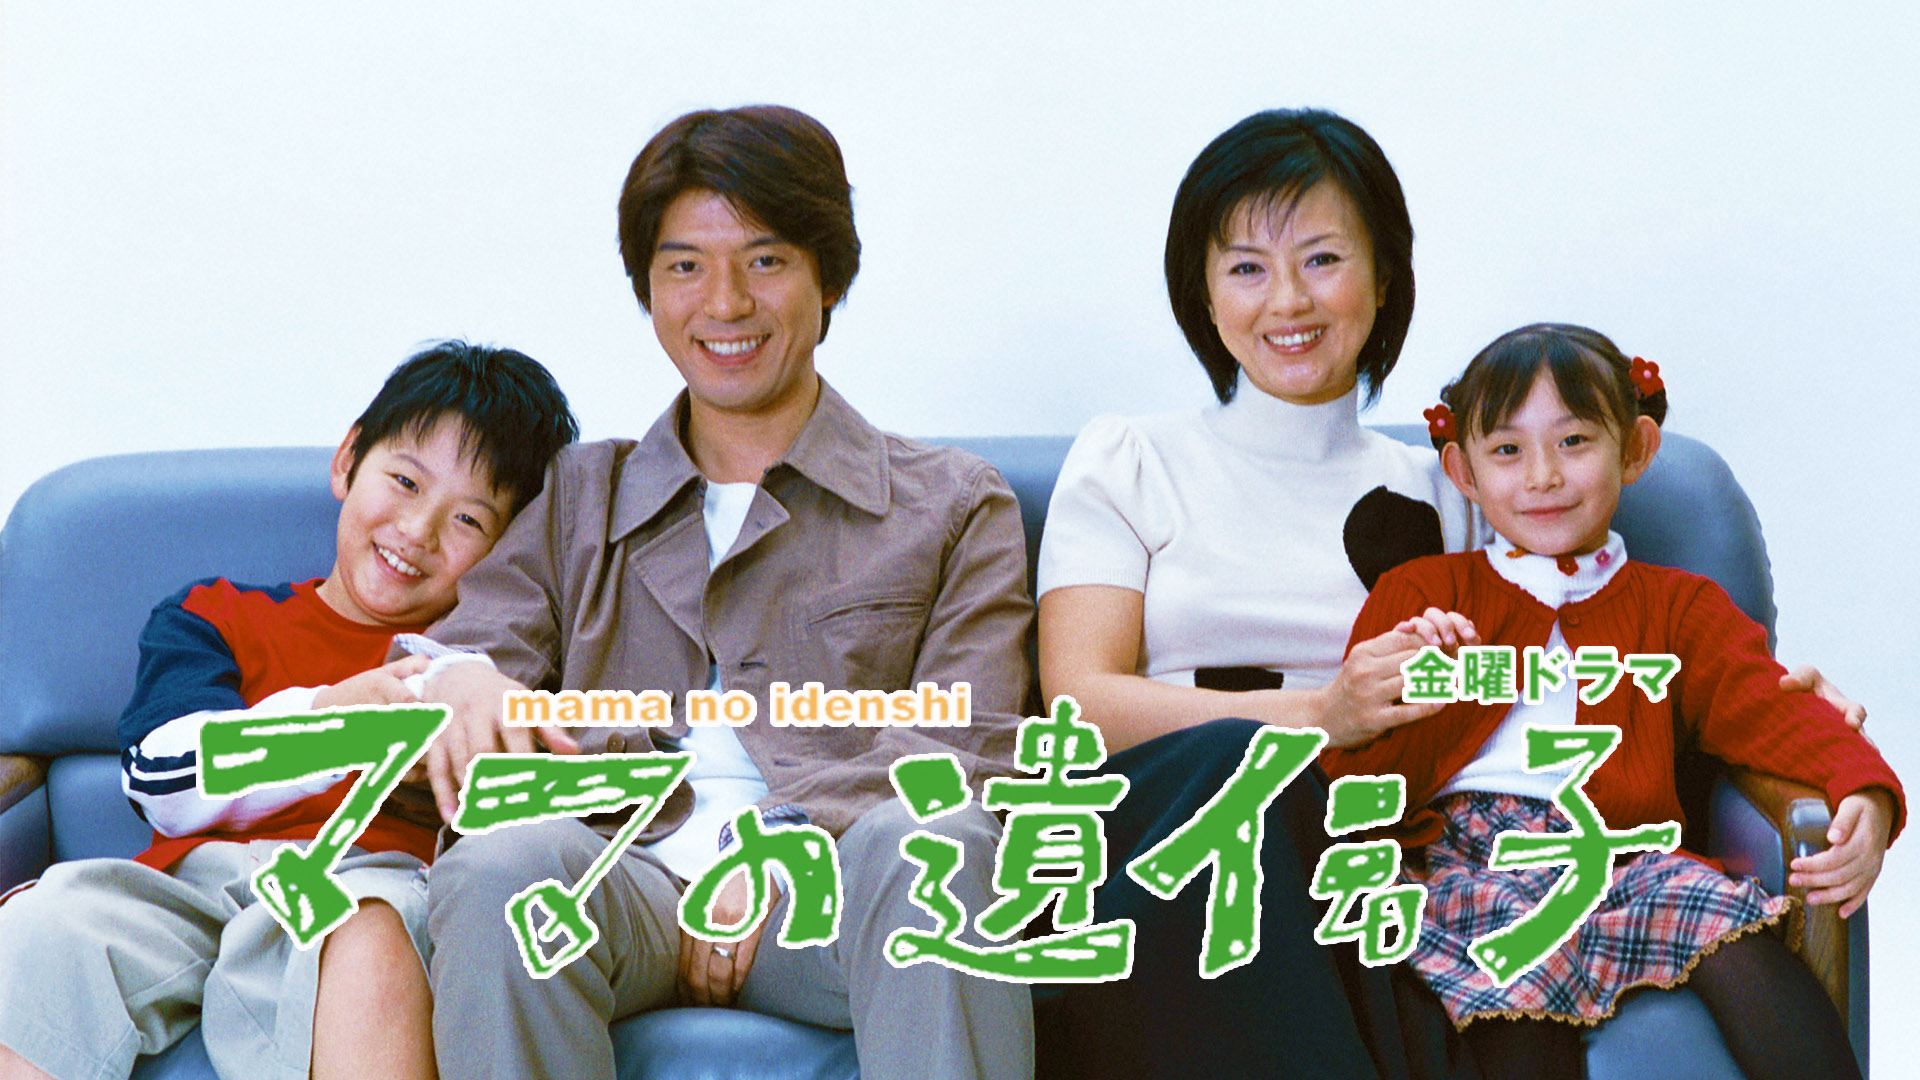 ママの遺伝子(国内ドラマ / 2002) - 動画配信 | U-NEXT 31日間無料トライアル